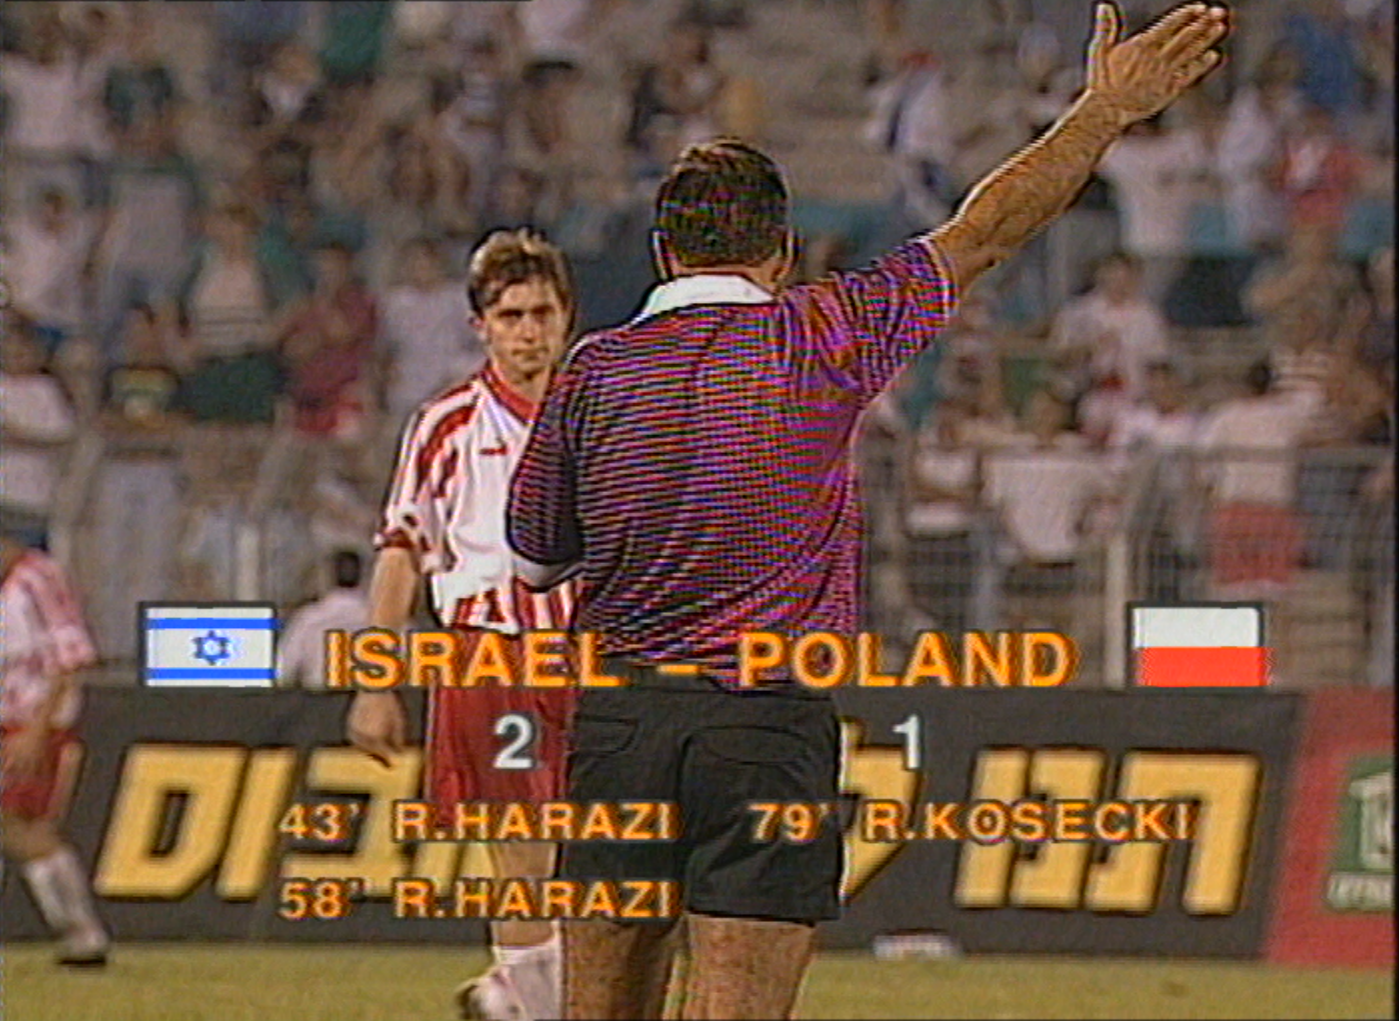 Ostatni gwizdek sędziego w Ramat Gan. Zmartwiony Jerzy Brzęczek. Na ekranie widoczny wynik Izrael - Polska 2:1 oraz strzelcy goli.